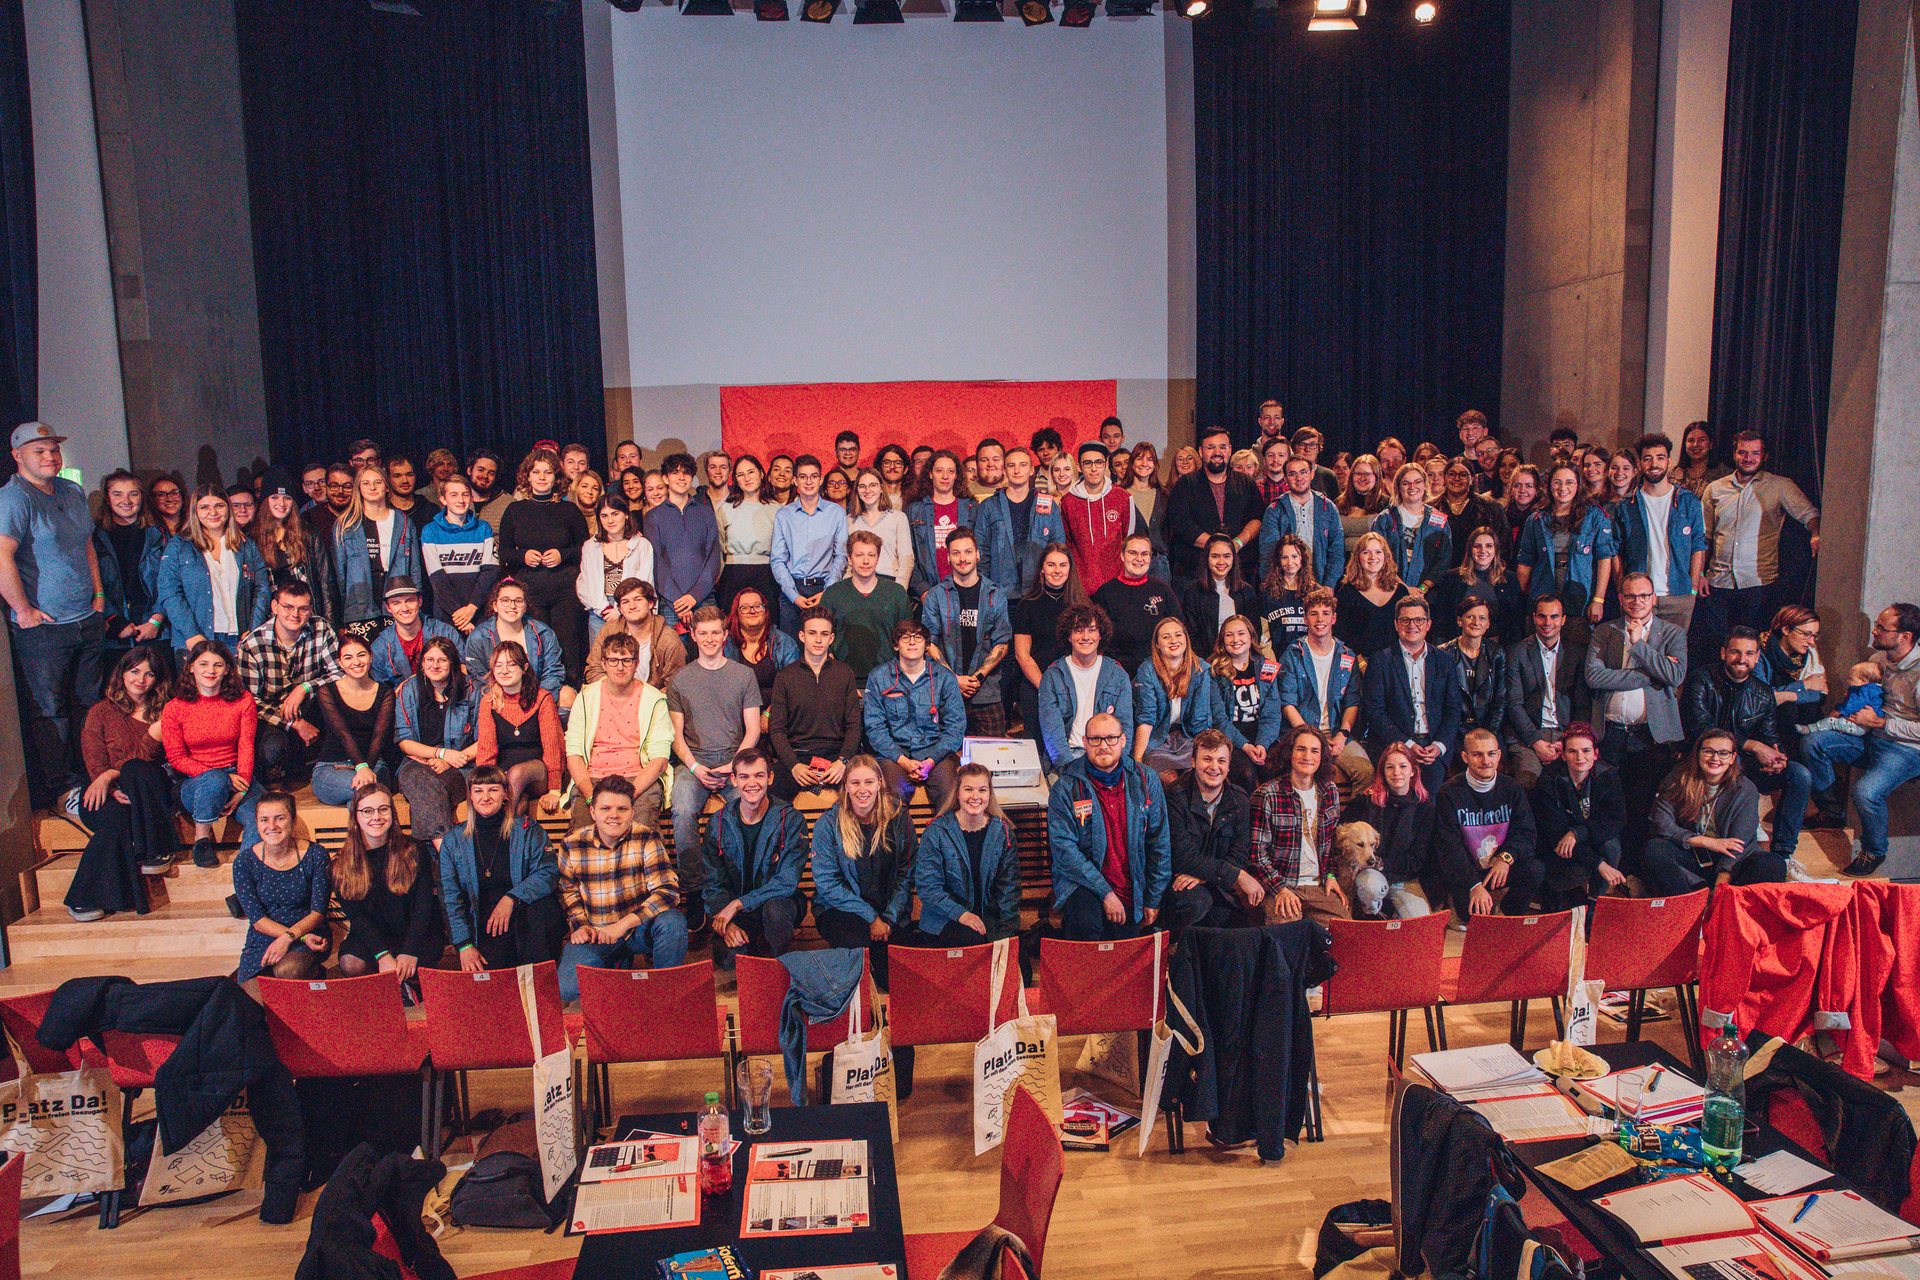 Gruppenfoto der Landeskonferenz der Sozialistischen Jugend Oberösterreich. Es sind über 100 junge Menschen auf der Bühne in mehreren Reihen aufgestellt. Viele tragen ein Blauhemd.